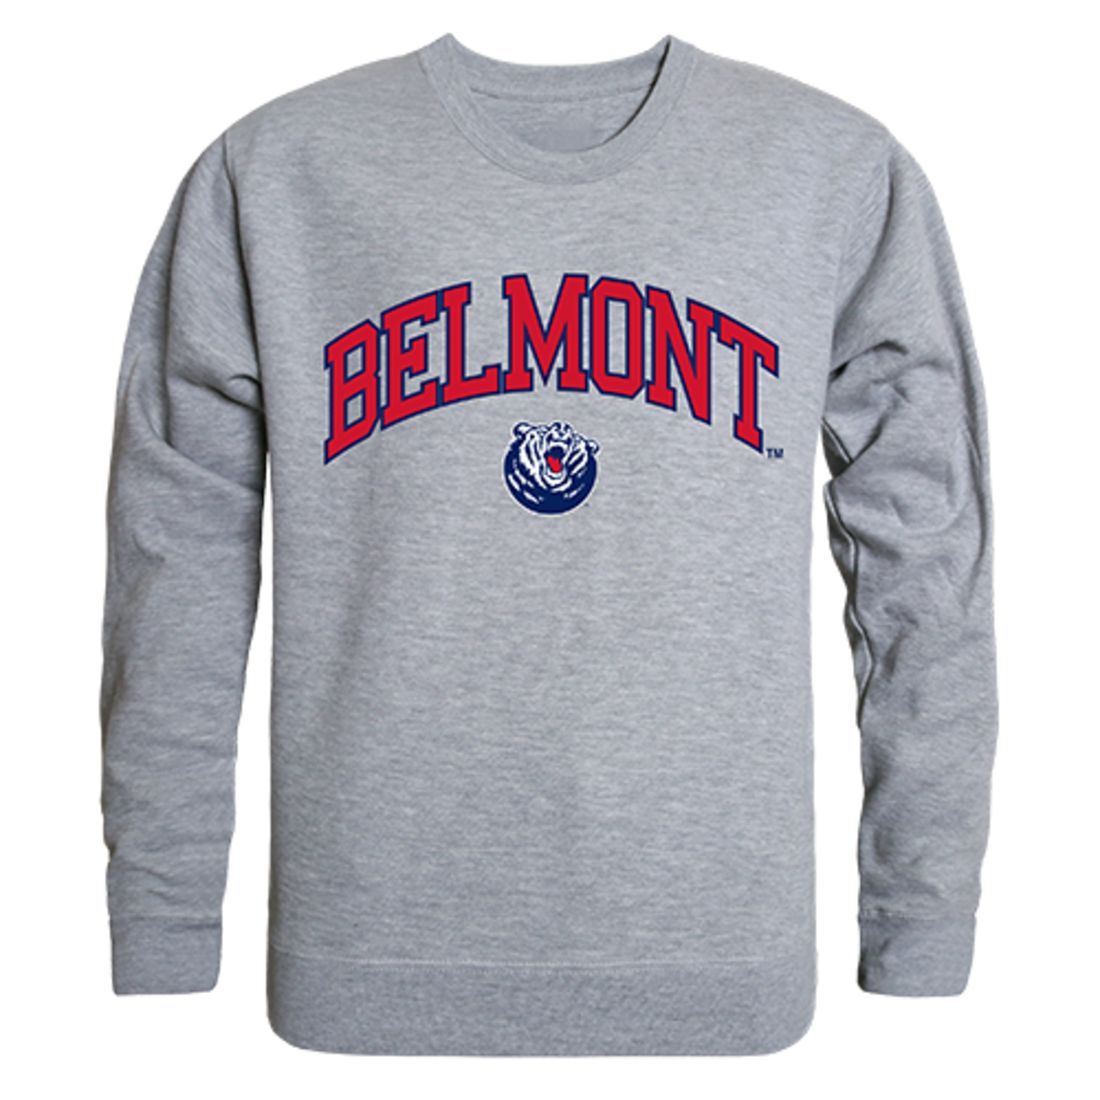 Belmont State University Campus Crewneck Pullover Sweatshirt Sweater Heather Grey-Campus-Wardrobe